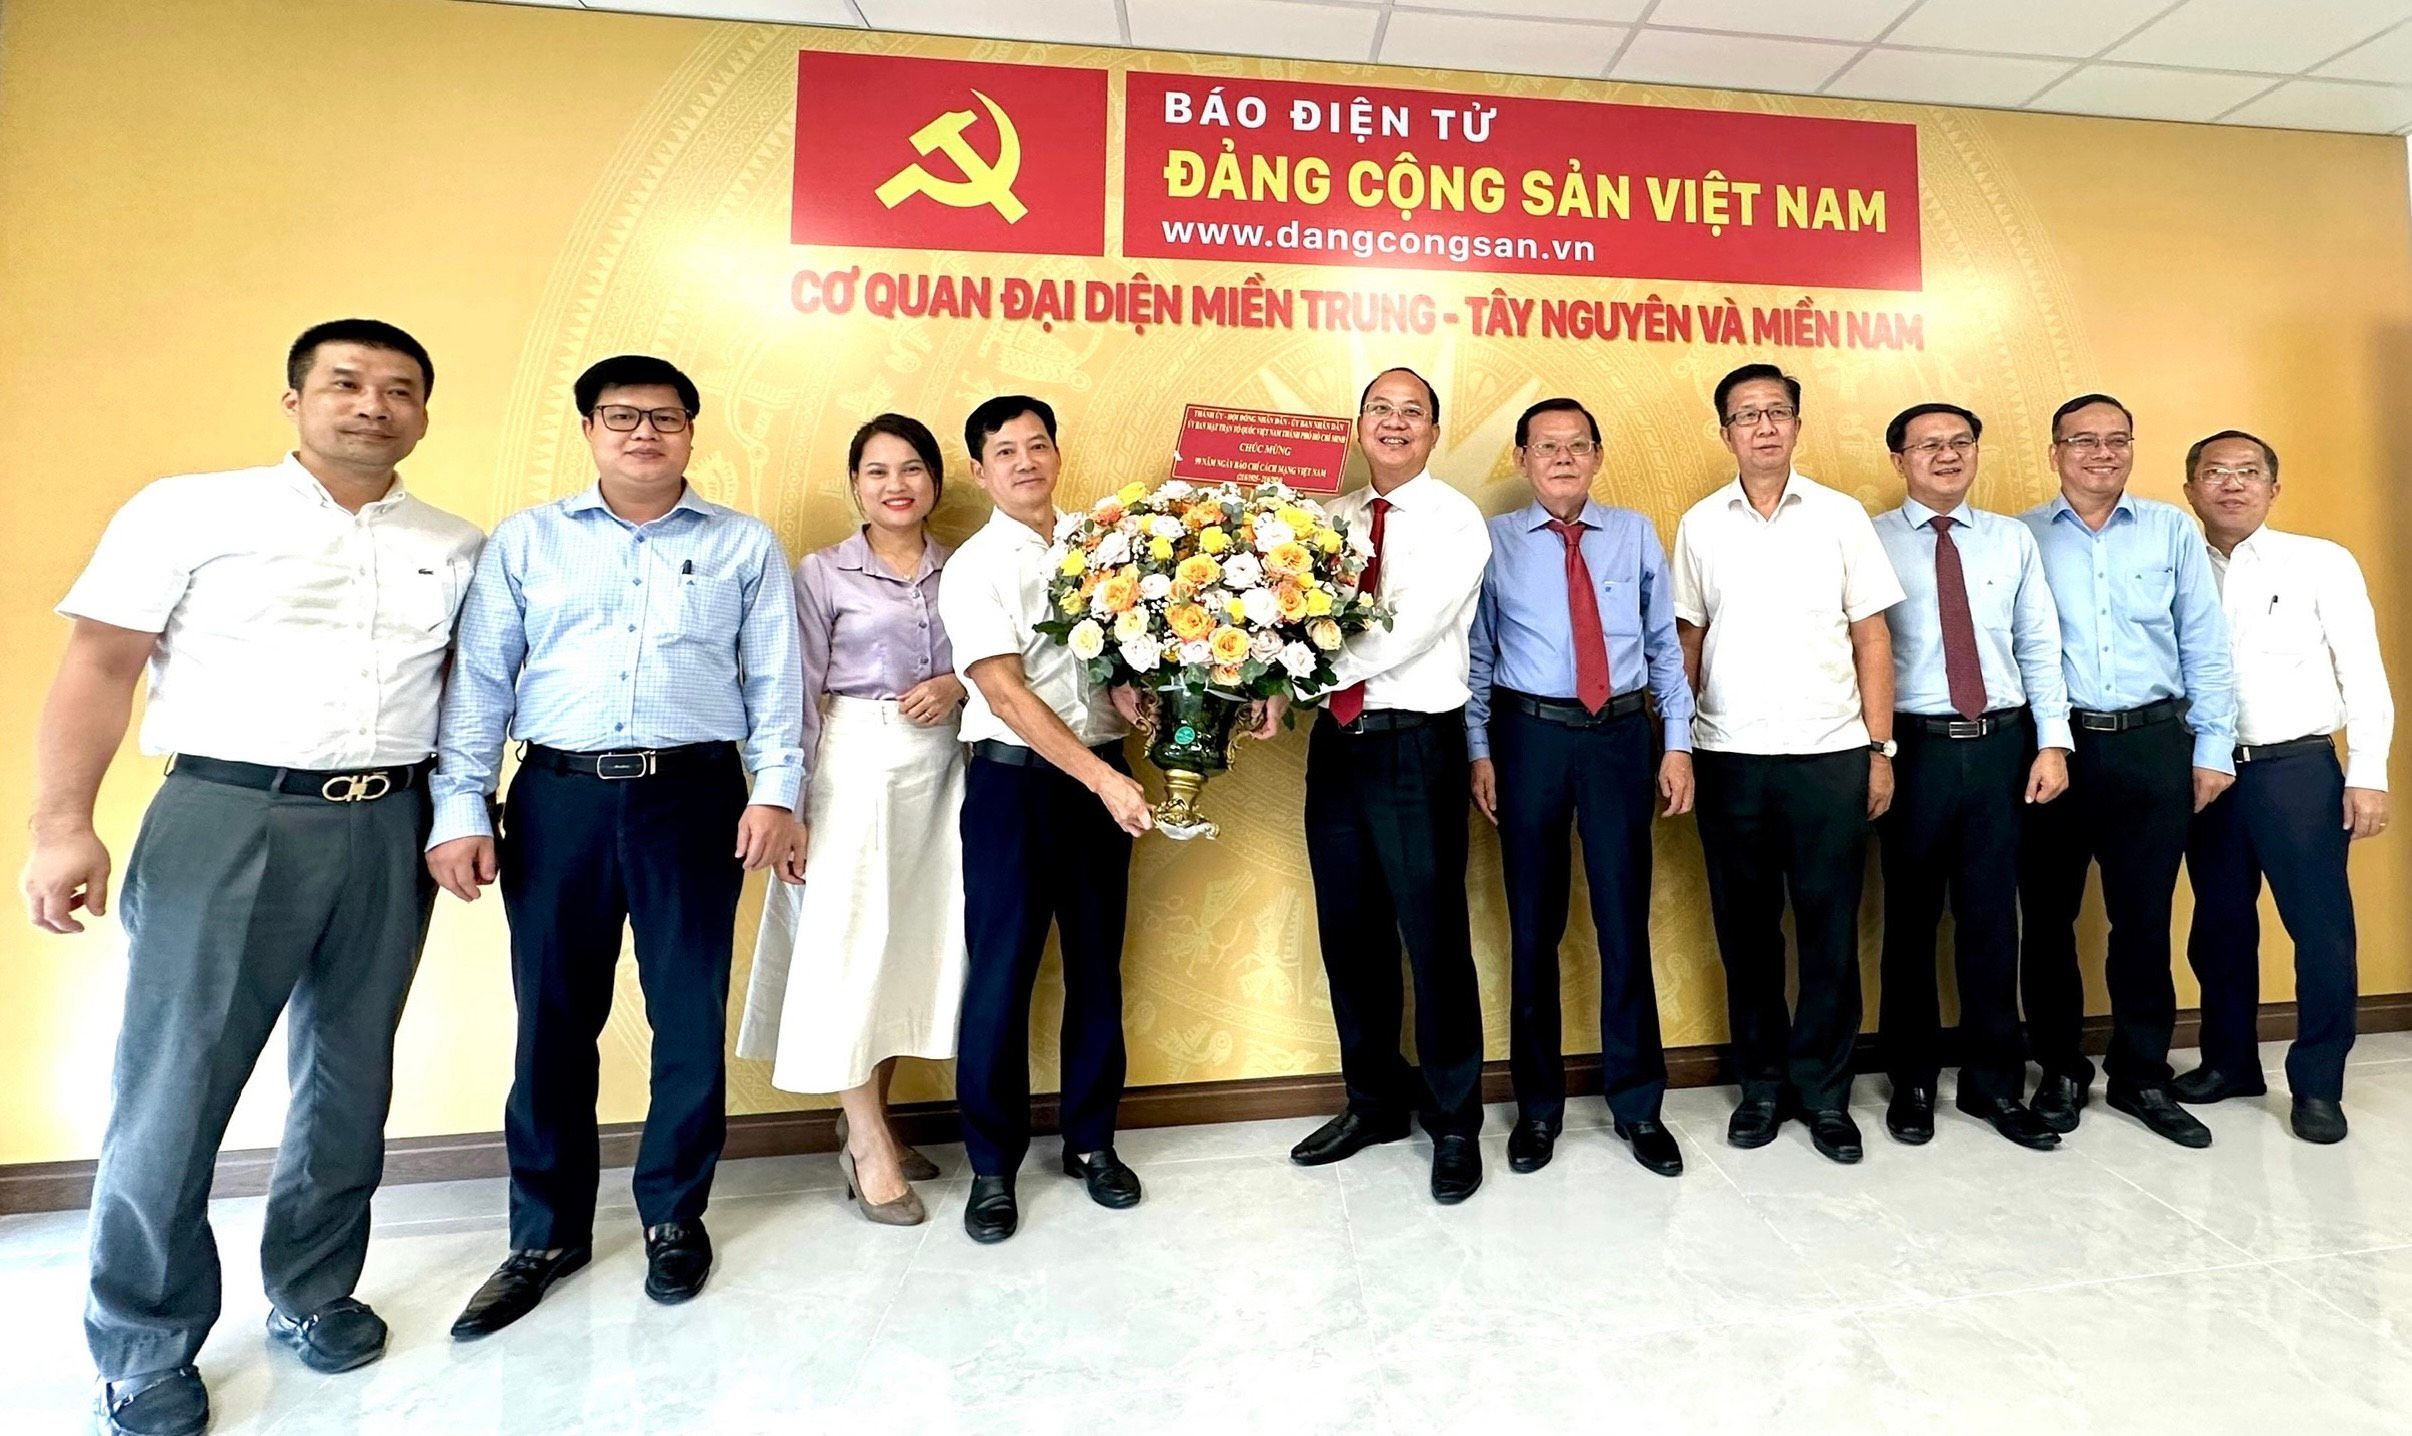 Tuyên truyền mạnh mẽ, góp phần vào sự phát triển của thành phố Hồ Chí Minh